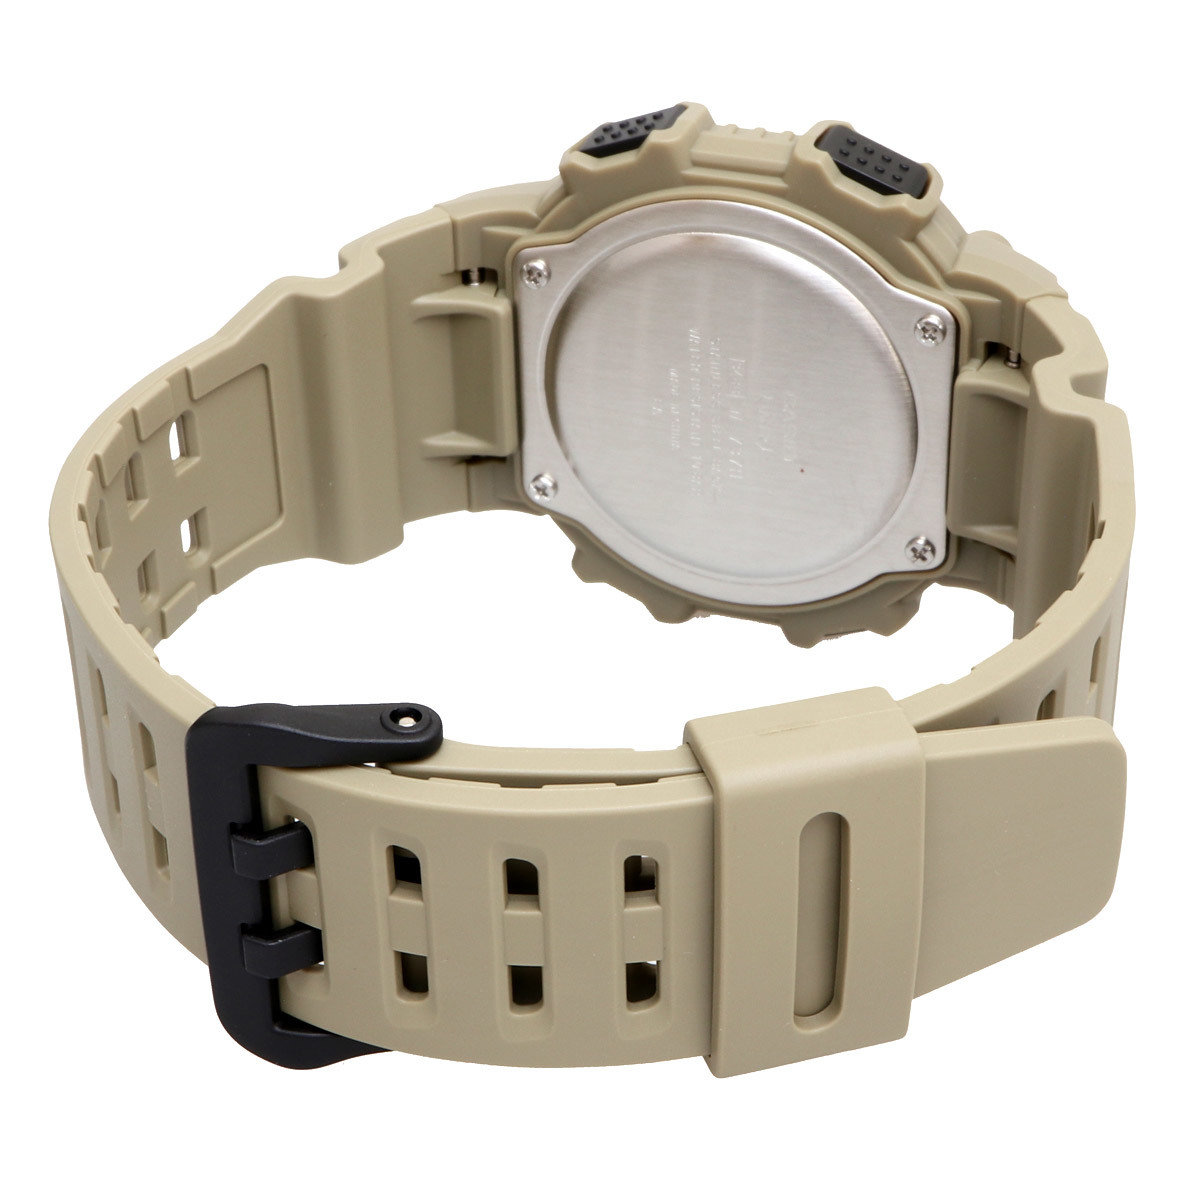 CASIO カシオ 腕時計 メンズ チープカシオ チプカシ 海外モデル デジタル ロングベルト(大きい腕回りサイズに対応) W-737HX-5AV_画像3